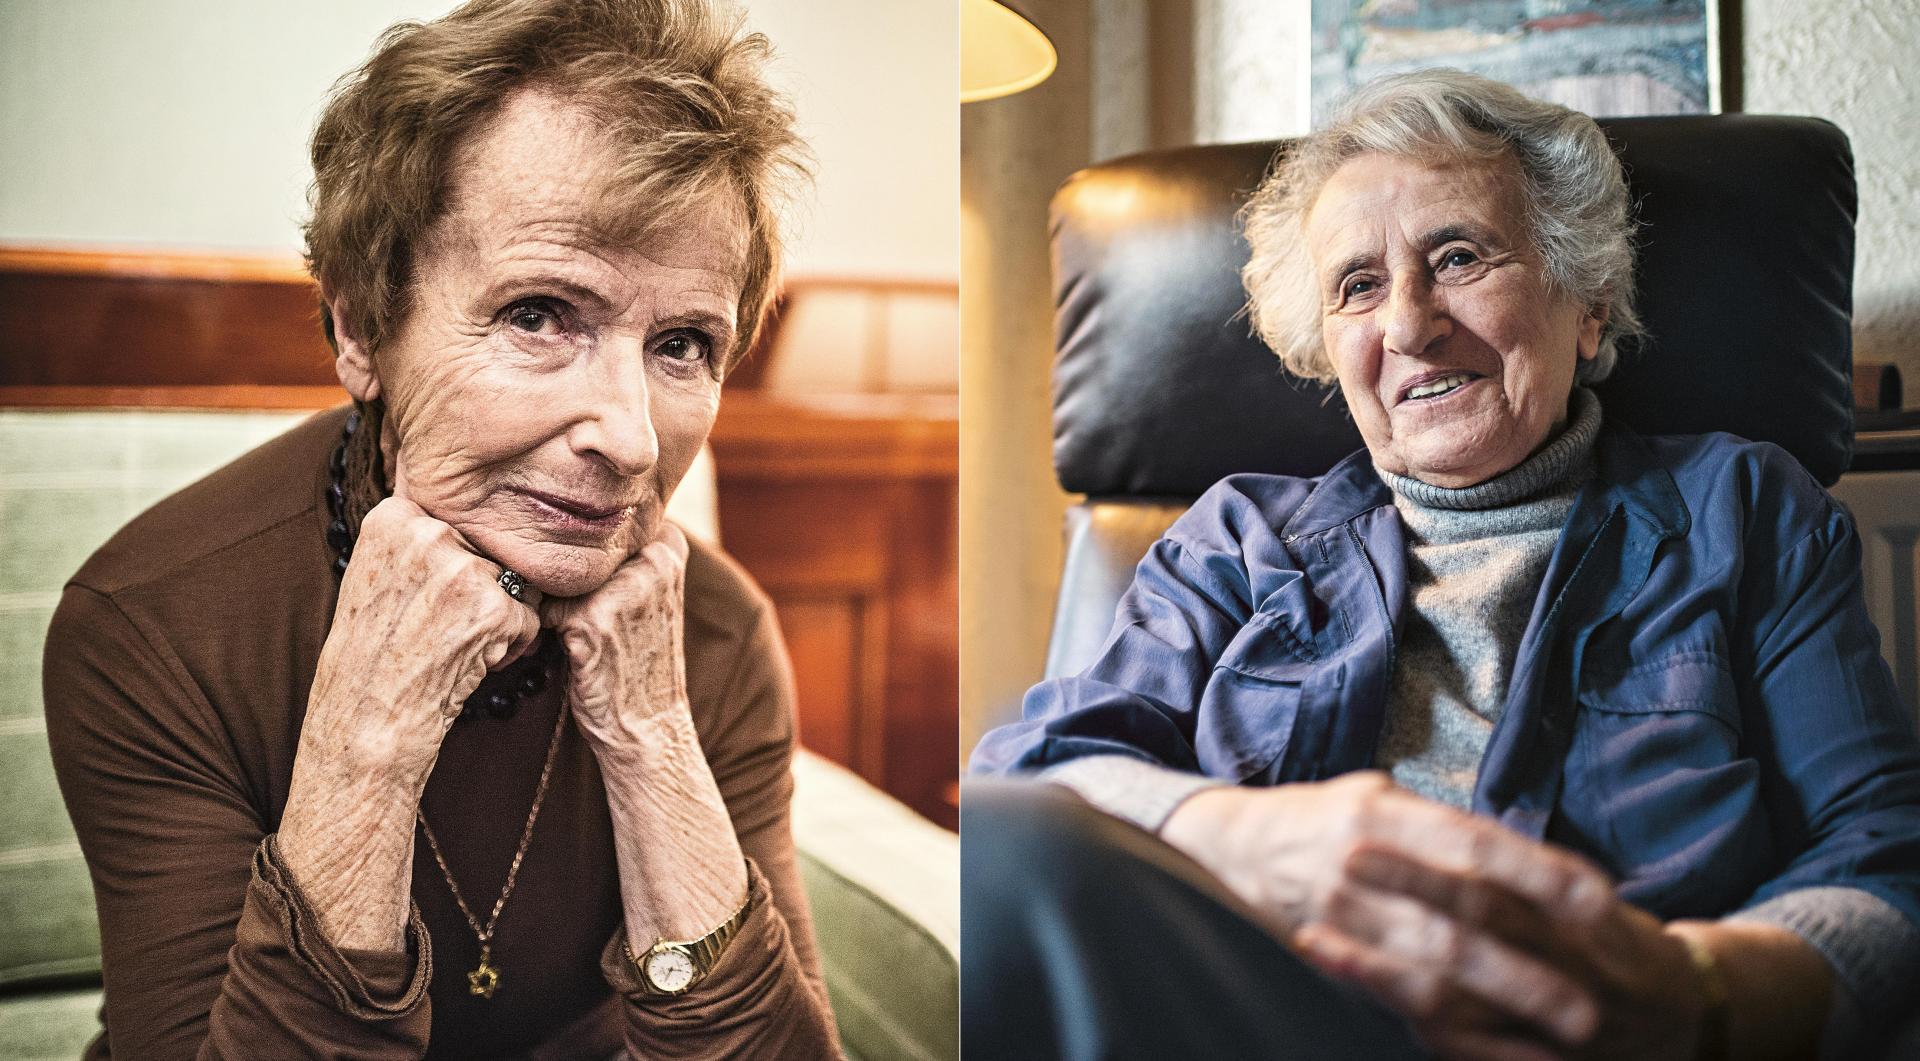 Porträts von Renate Harpprecht (links) und Anita Lasker-Wallfisch